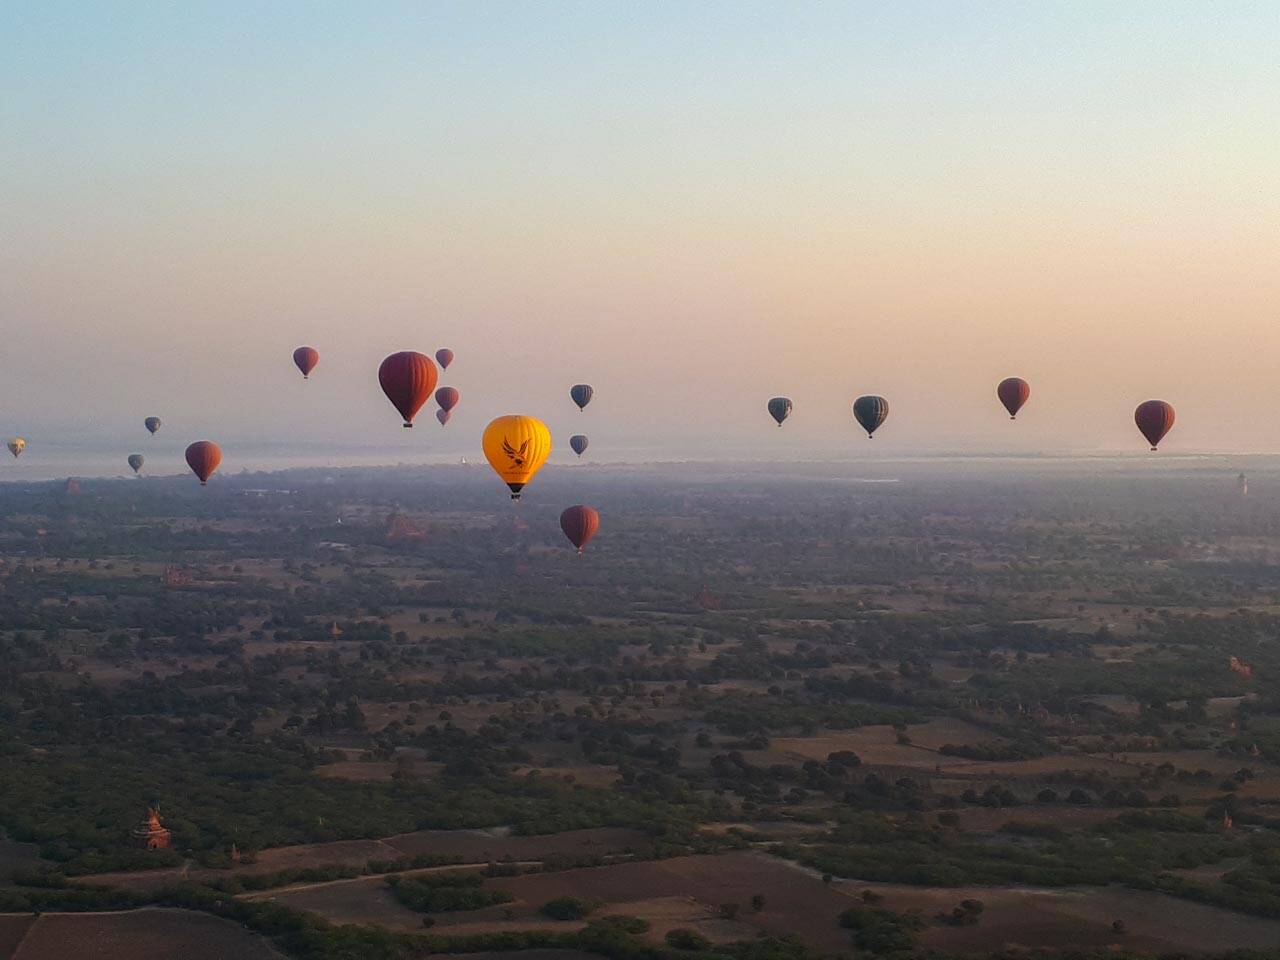 O amanhecer no voo de balão em Bagan.